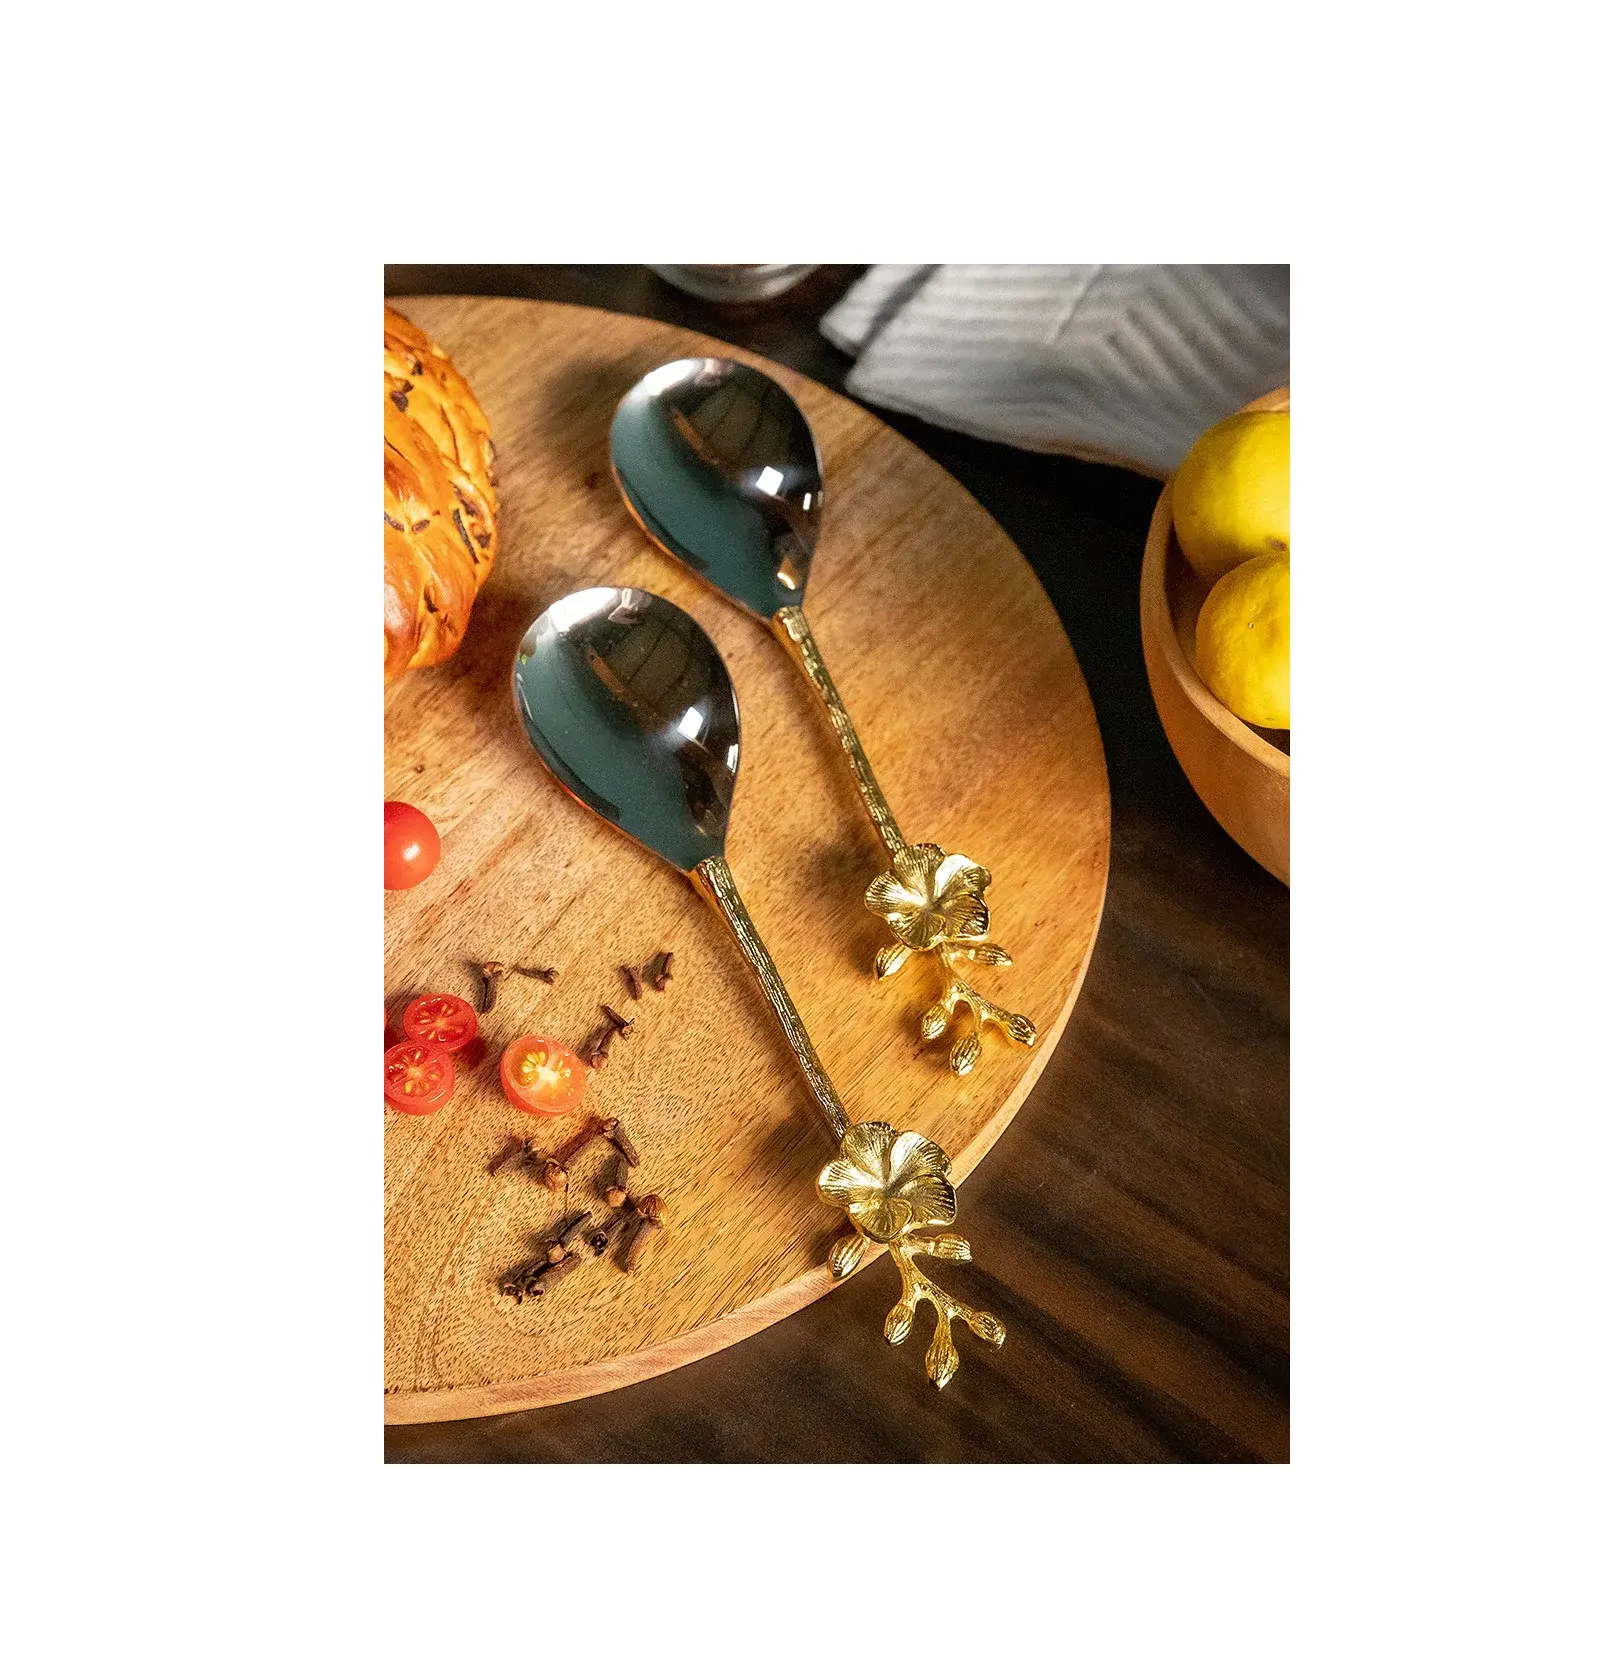 طقم حديث من النحاس الأصفر من 2 أواني طعام من النحاس عالي الجودة وحجم مخصص رخيص الثمن مصنوع يدويًا